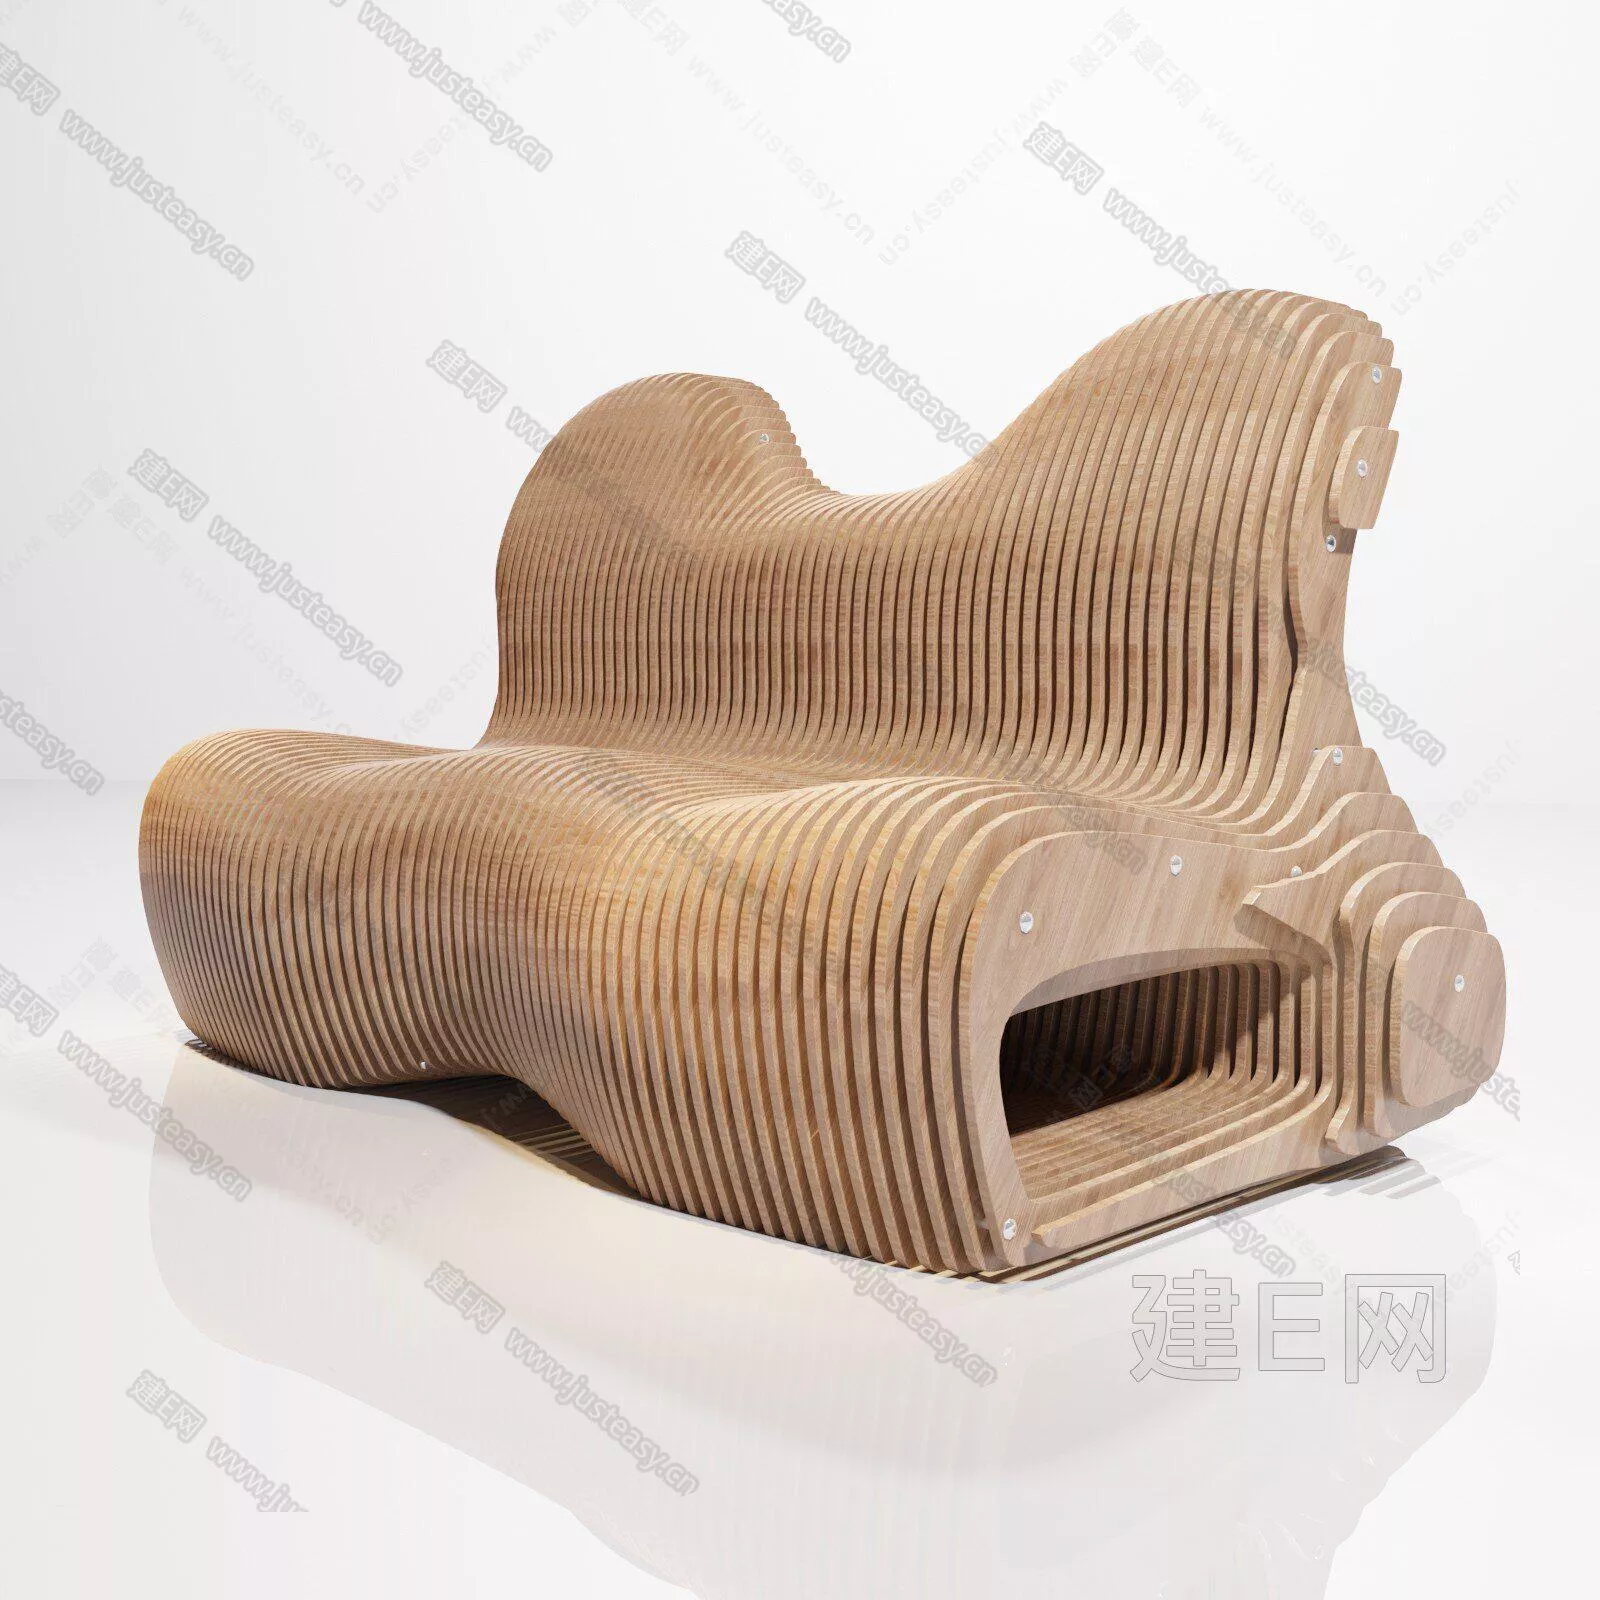 MODERN SOFA - SKETCHUP 3D MODEL - ENSCAPE - 110841154